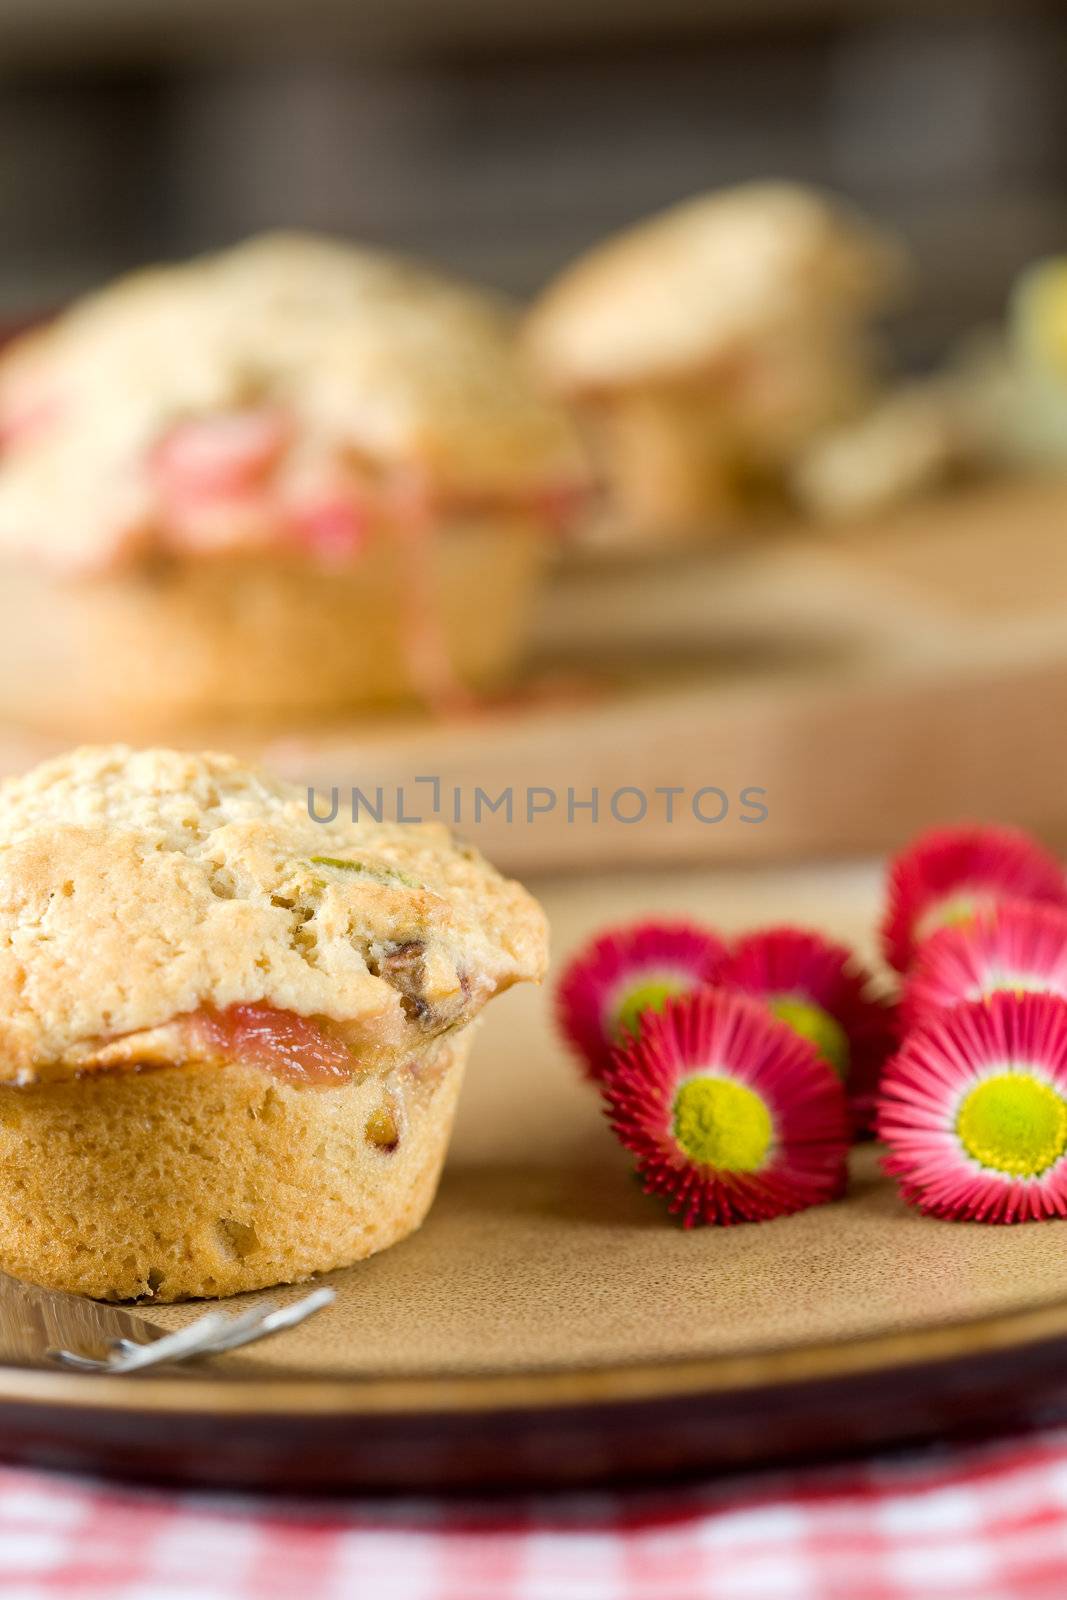 Muffins by Fotosmurf